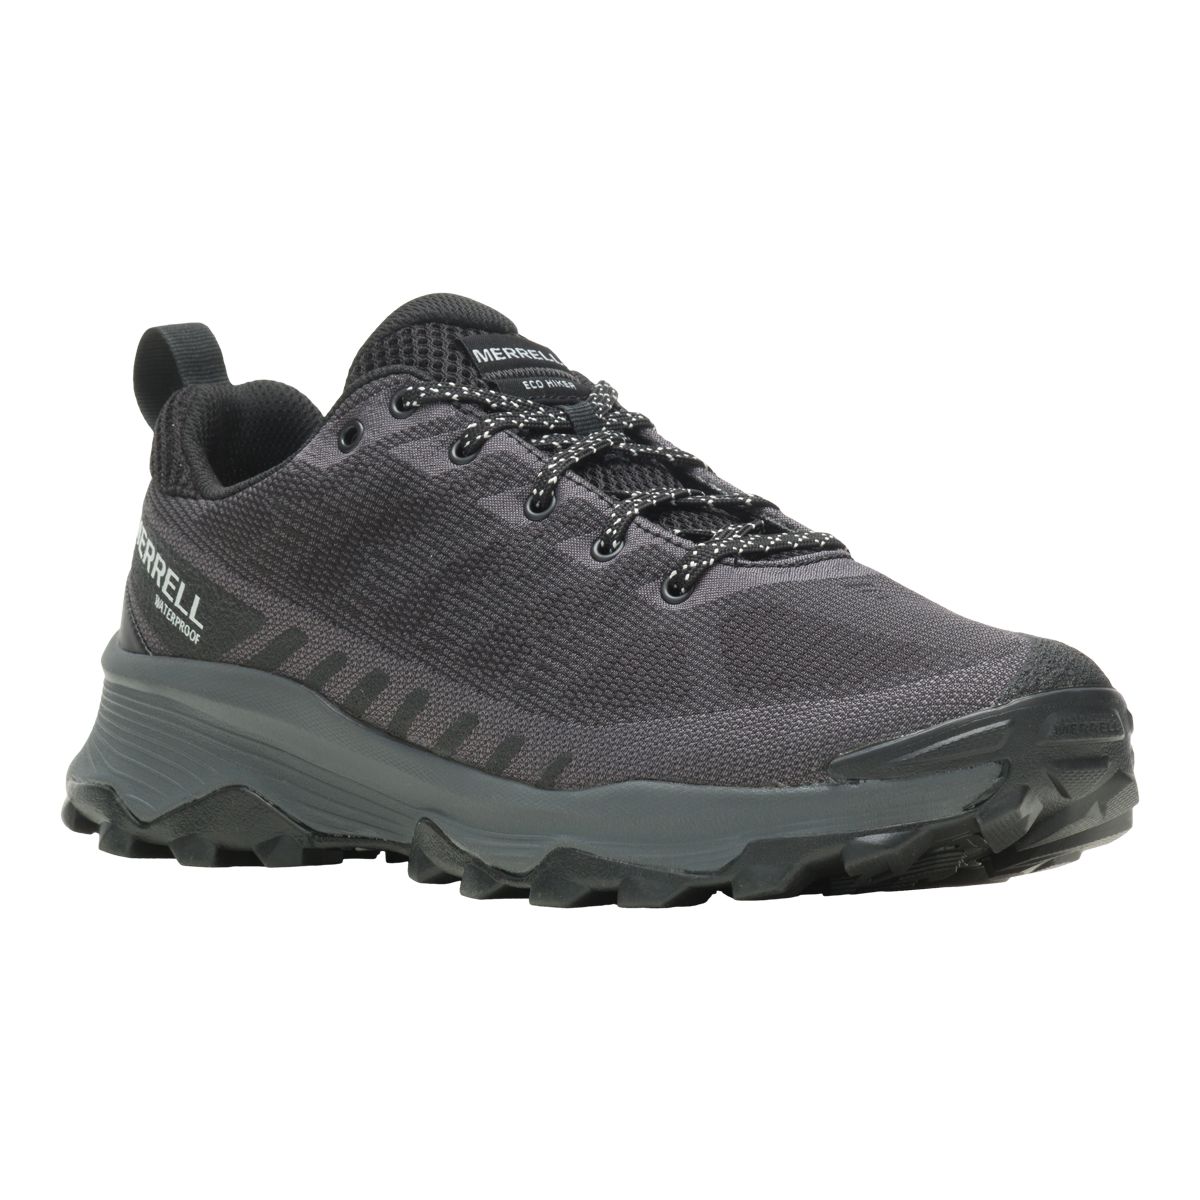 Columbia Men's Peakfreak II OutDry Hiking Shoes, Waterproof, Breathable